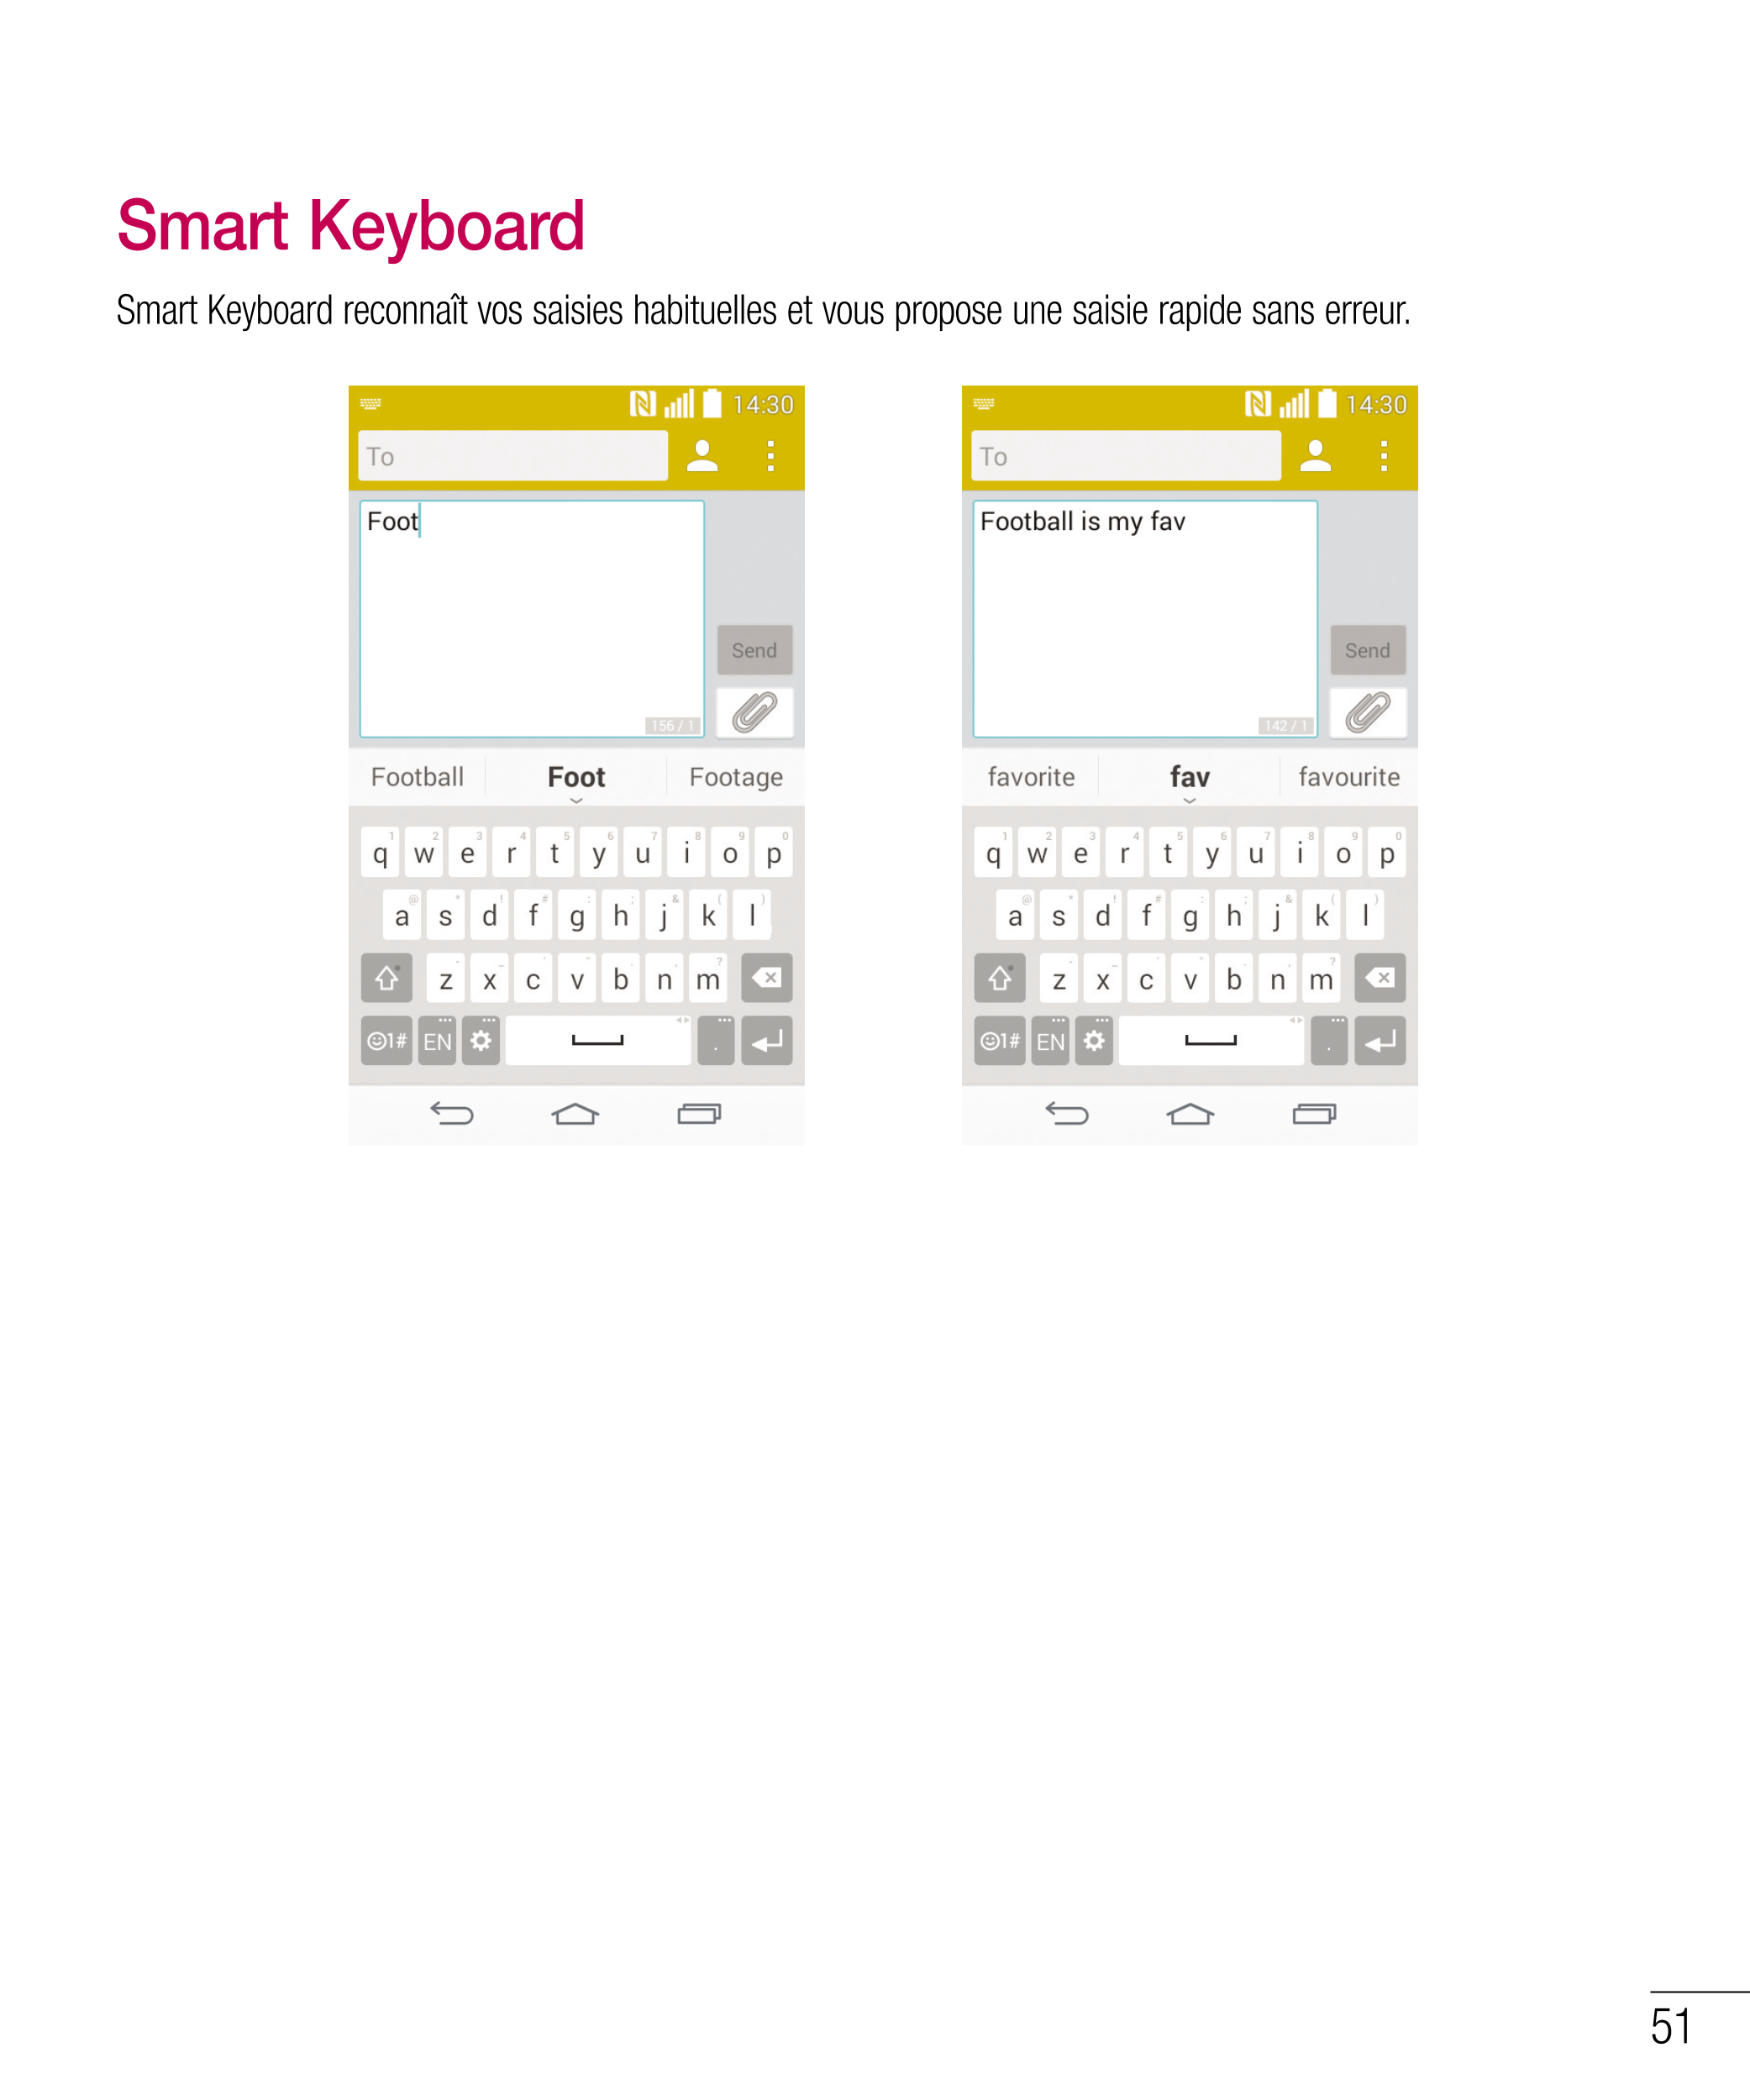 Smart Keyboard
Smart Keyboard reconnaît vos saisies habituelles et vous propose une saisie rapide sans erreur.
51